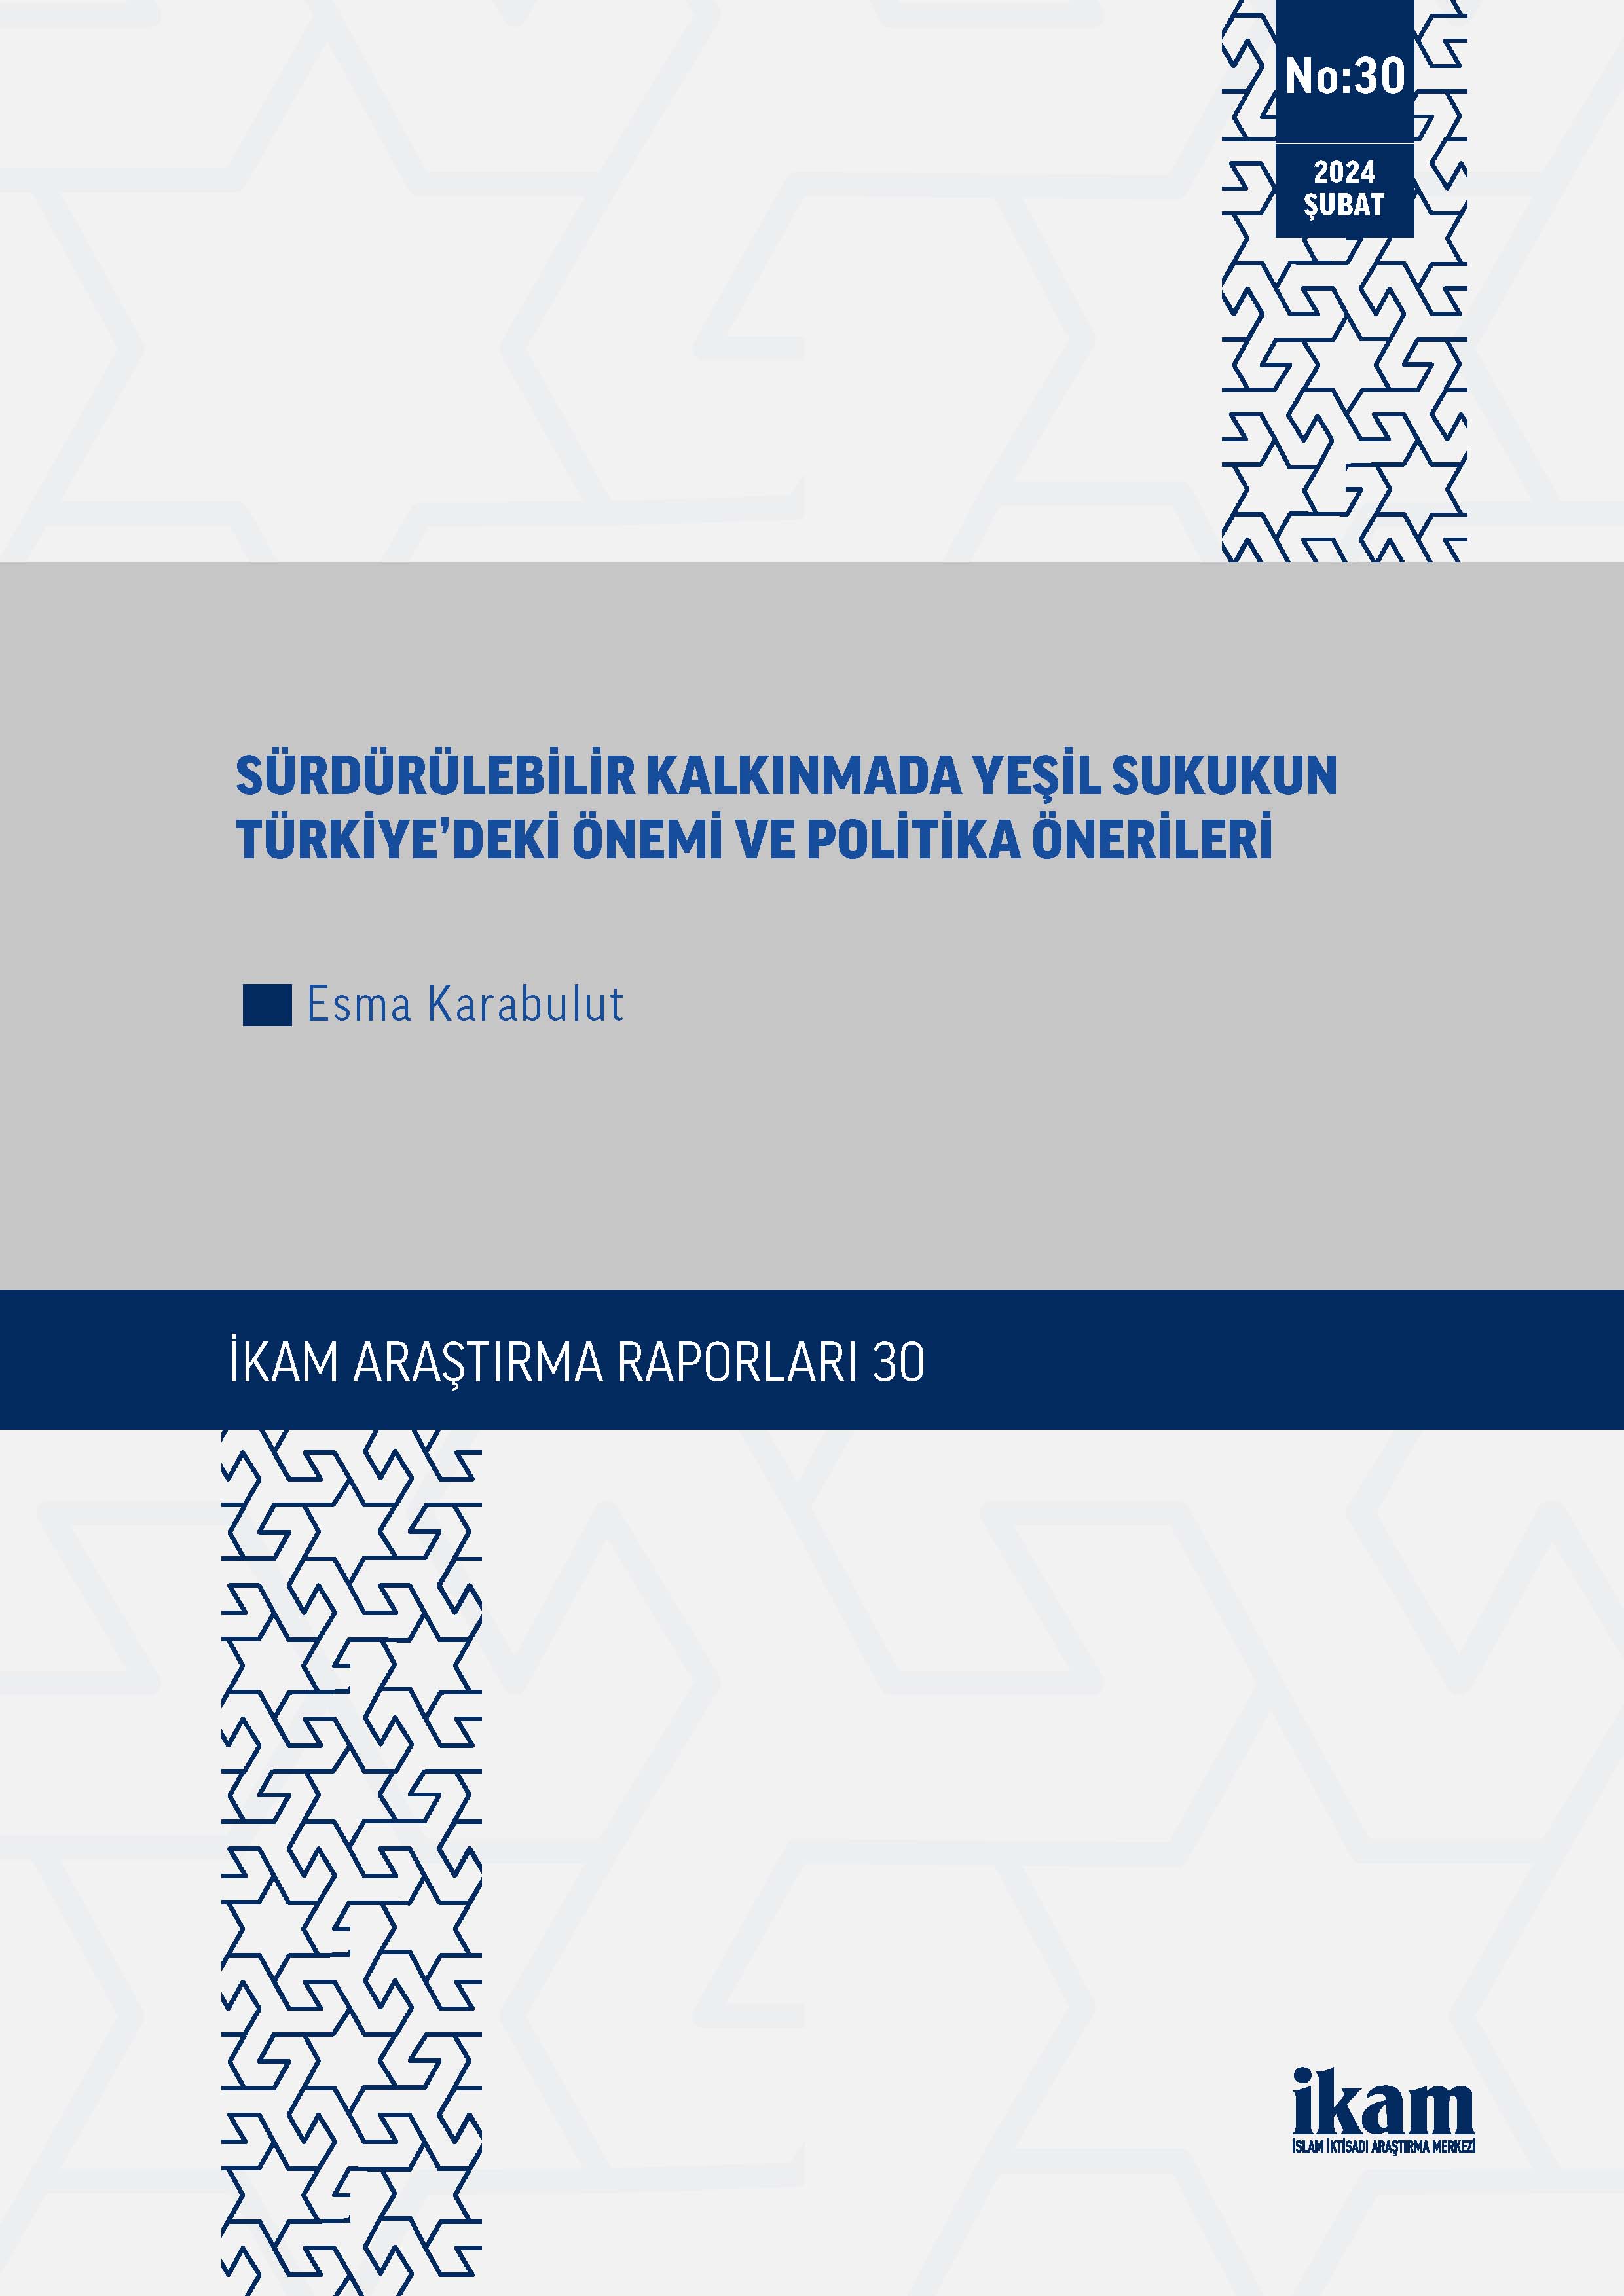 Sürdürülebilir Kalkınmada Yeşil Sukukun Türkiye’deki Önemi ve Politika Önerileri